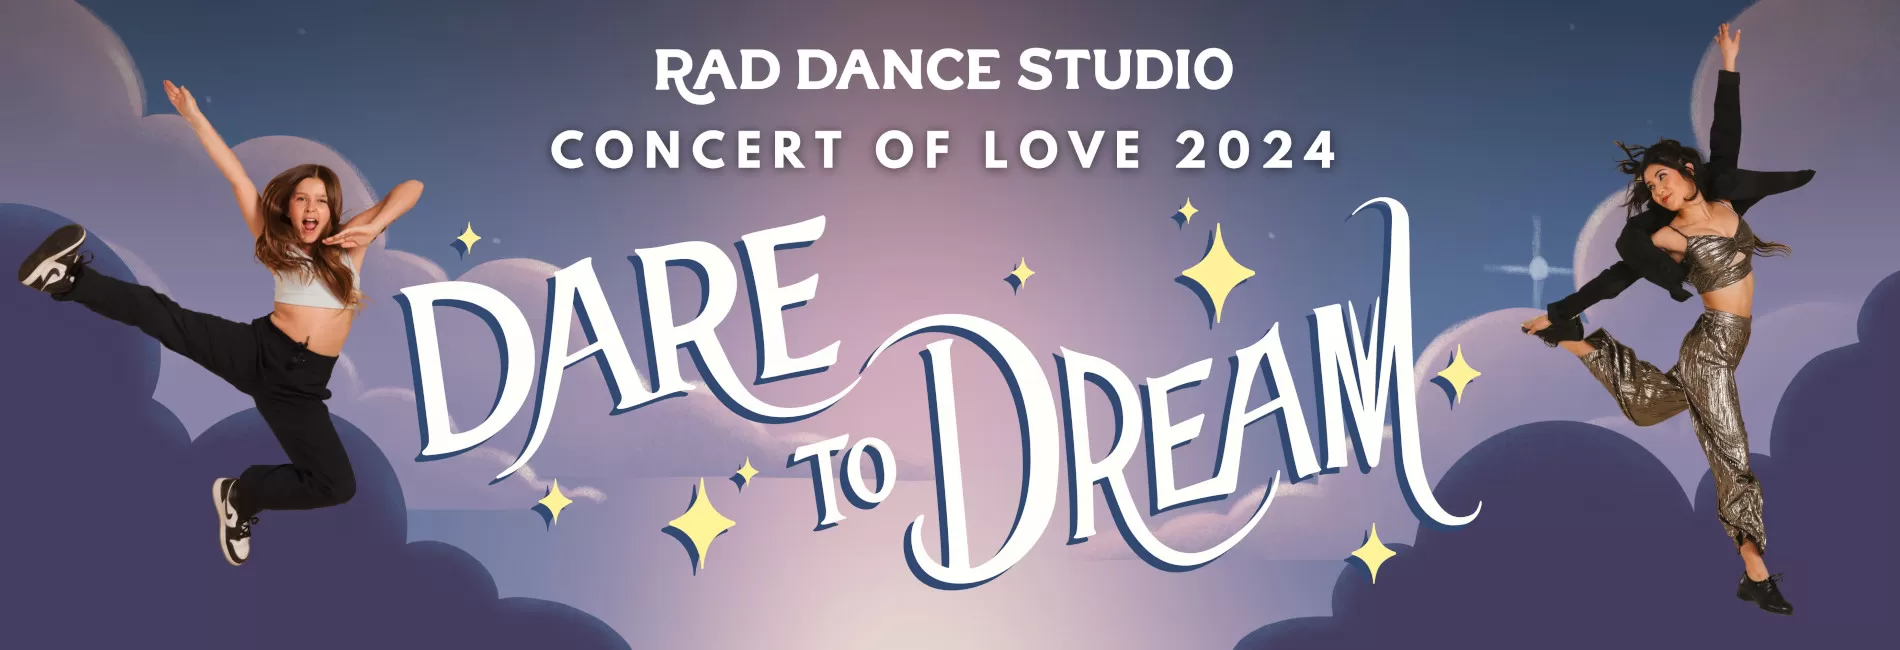 Concert of Love 2024: Dare to Dream